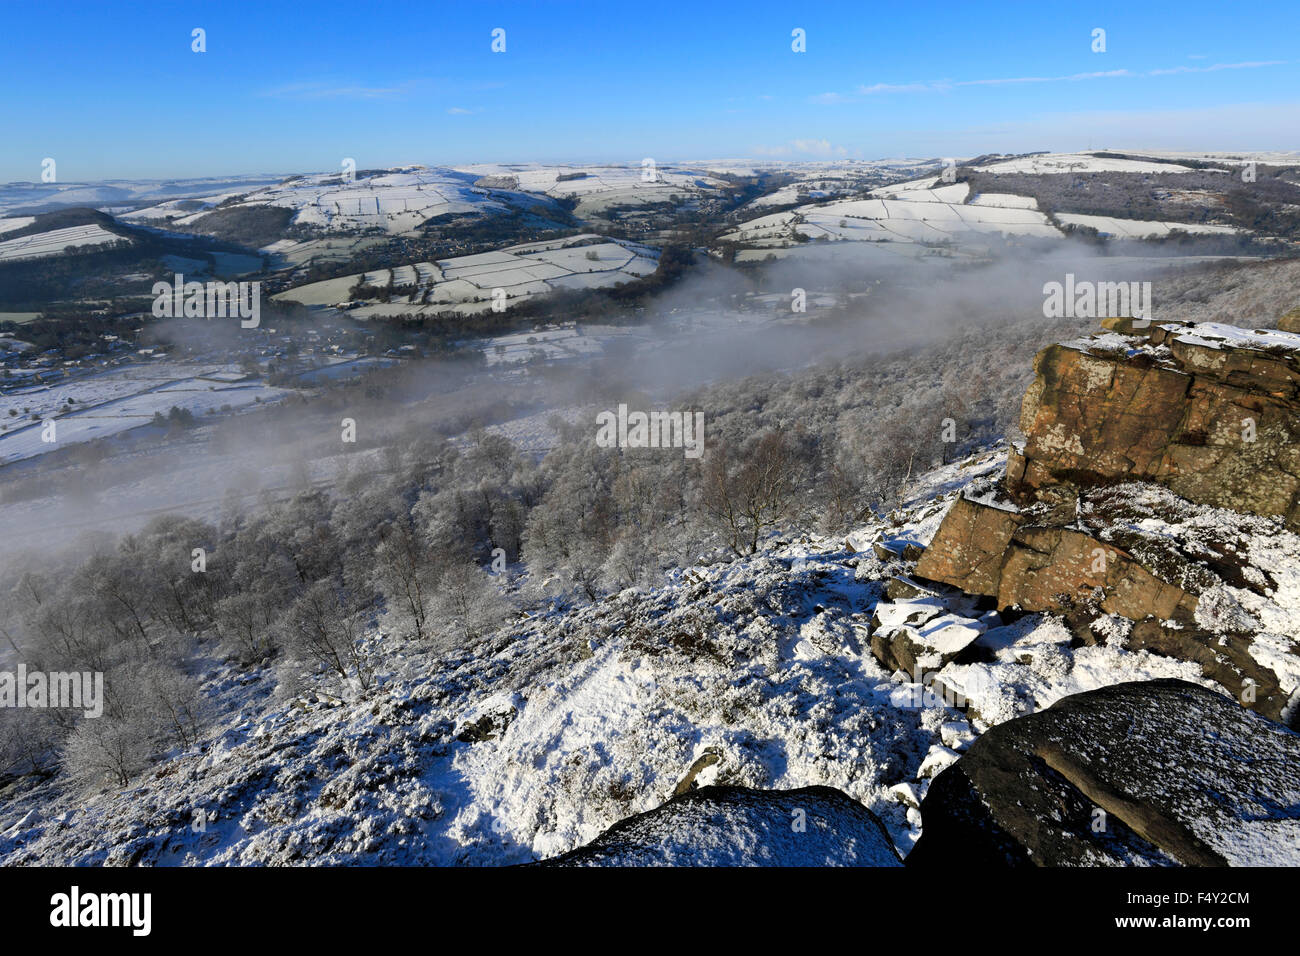 Janvier, hiver neige et brume sur la vallée, Curbar ; comté de Derbyshire Peak District National Park, Angleterre, Royaume-Uni Banque D'Images